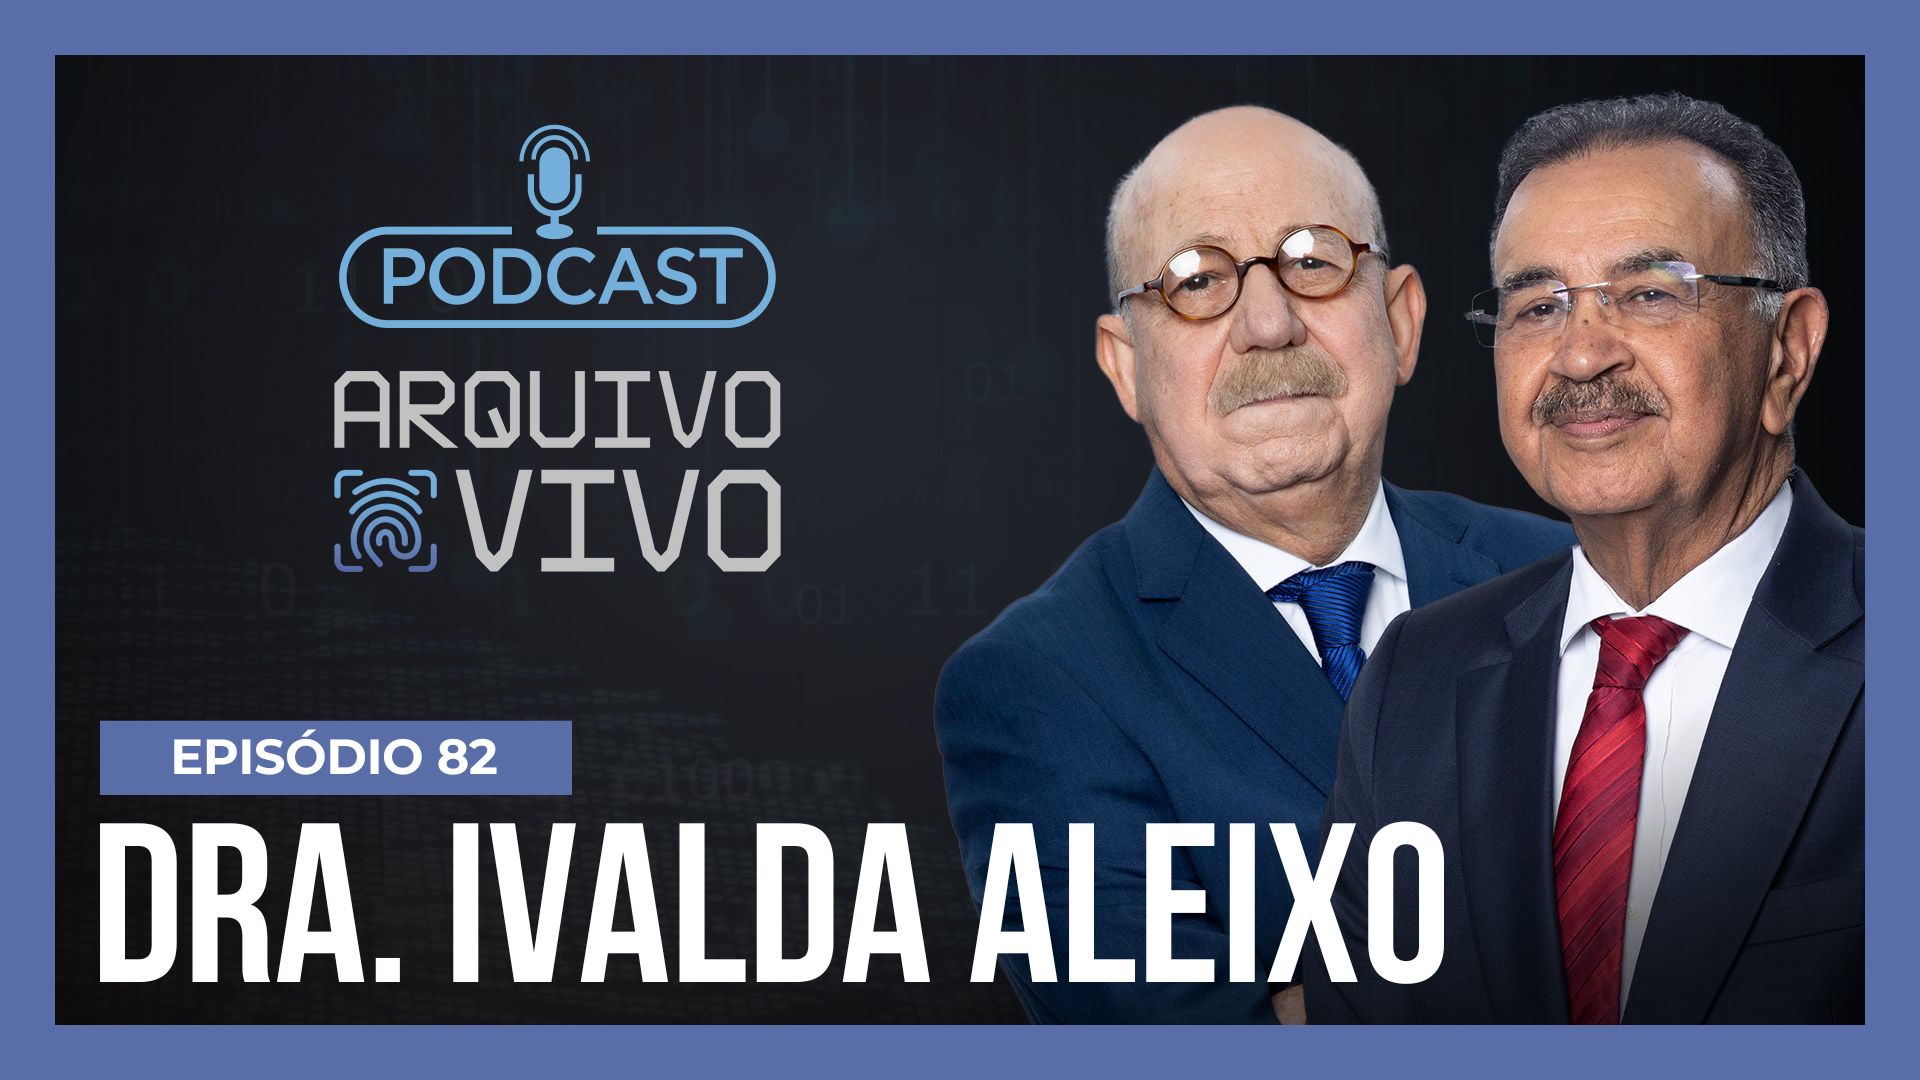 Vídeo: Podcast Arquivo Vivo : Dra. Ivalda Aleixo, diretora do DHPP e uma das mulheres pioneiras na polícia | Ep. 82